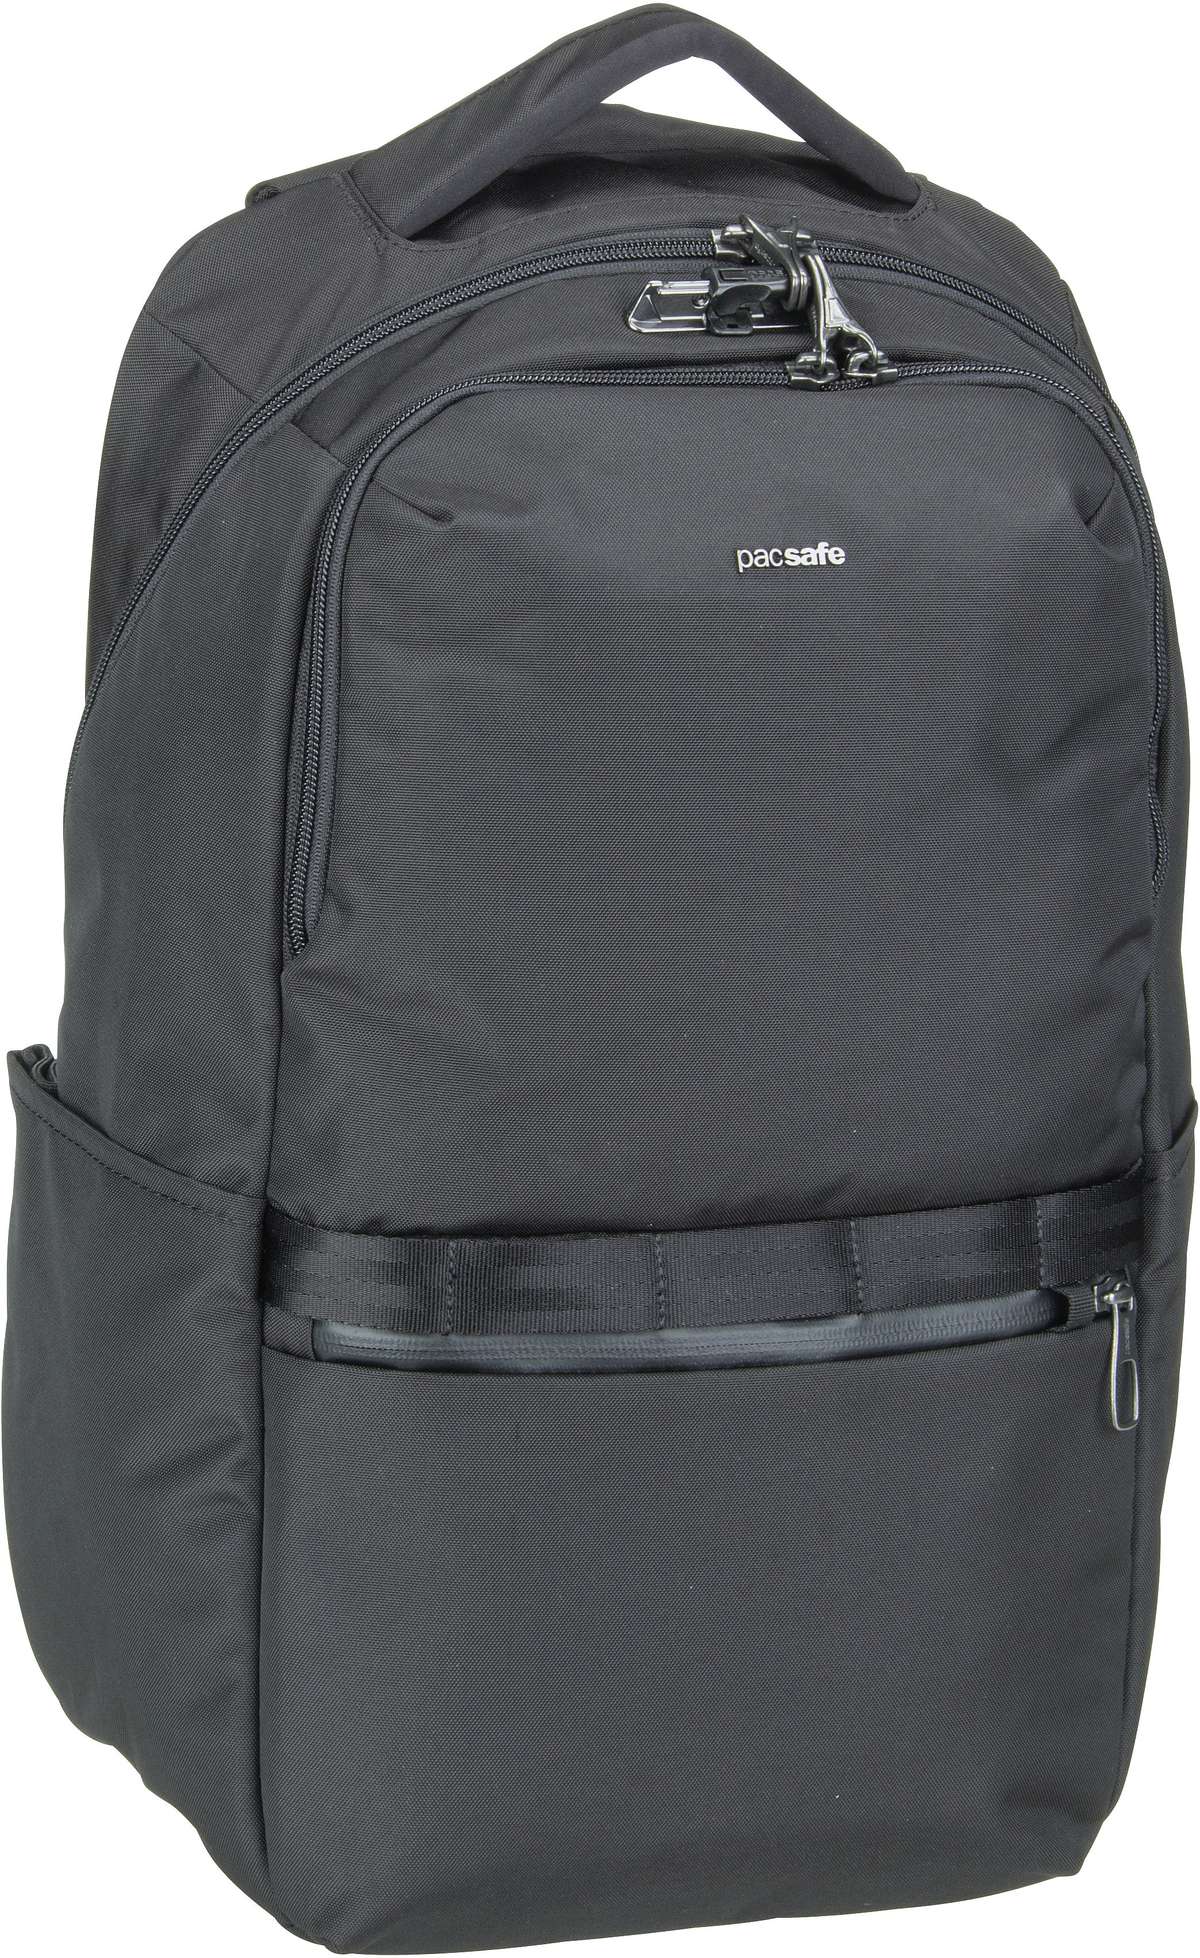 Pacsafe Pacsafe Metrosafe X 25L Backpack in Schwarz (25 Liter), Rucksack / Backpack